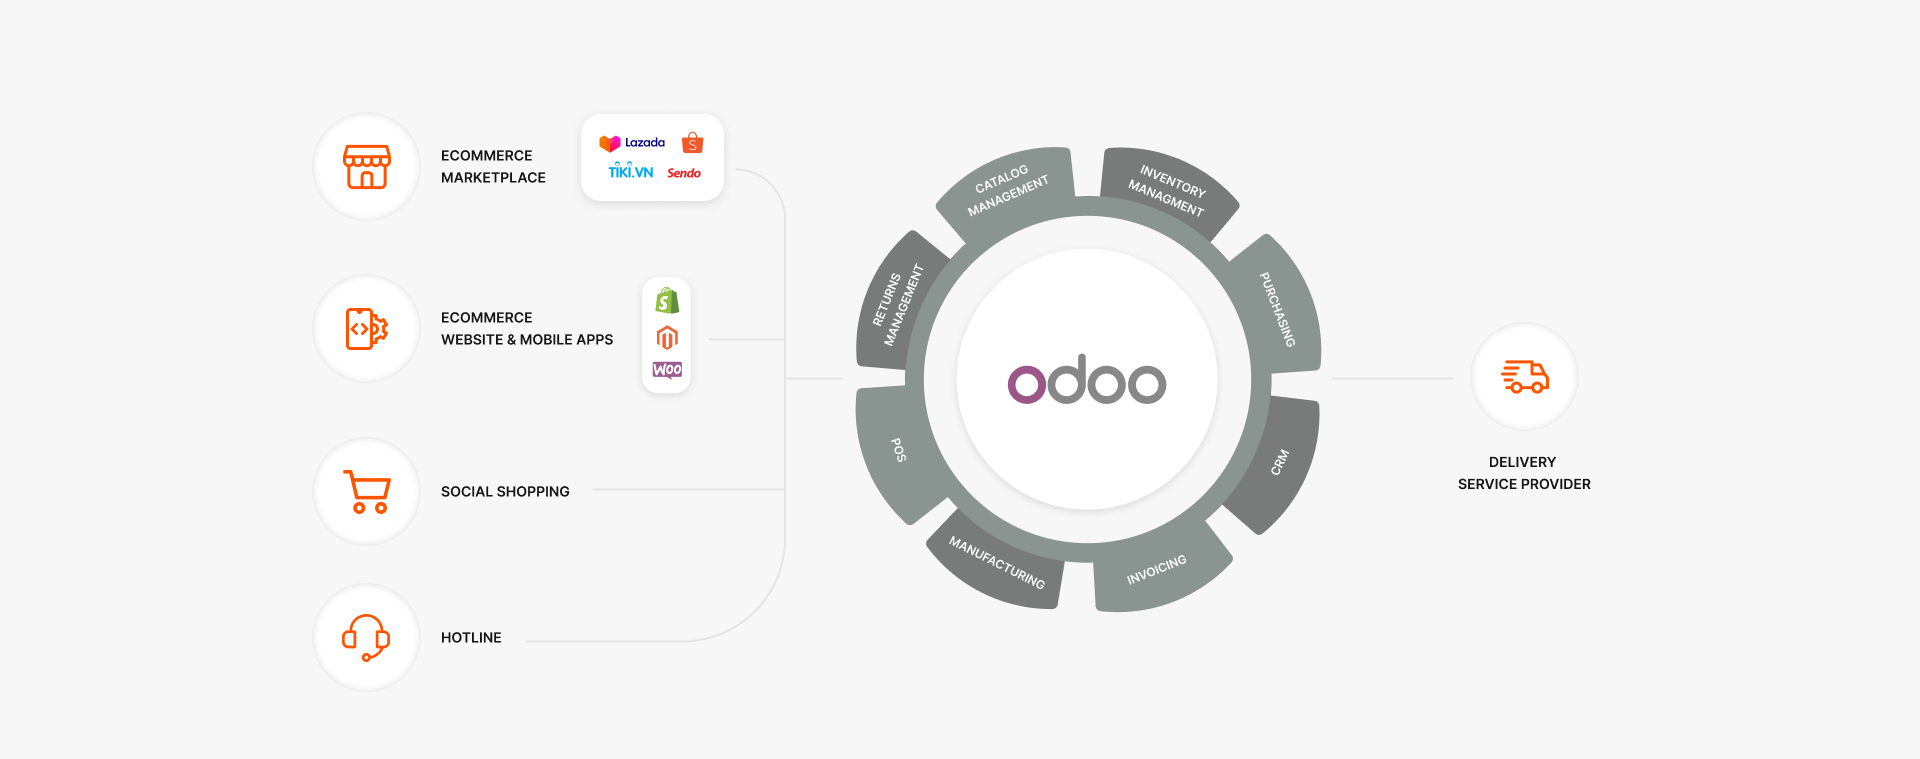 Odoo - Order management system